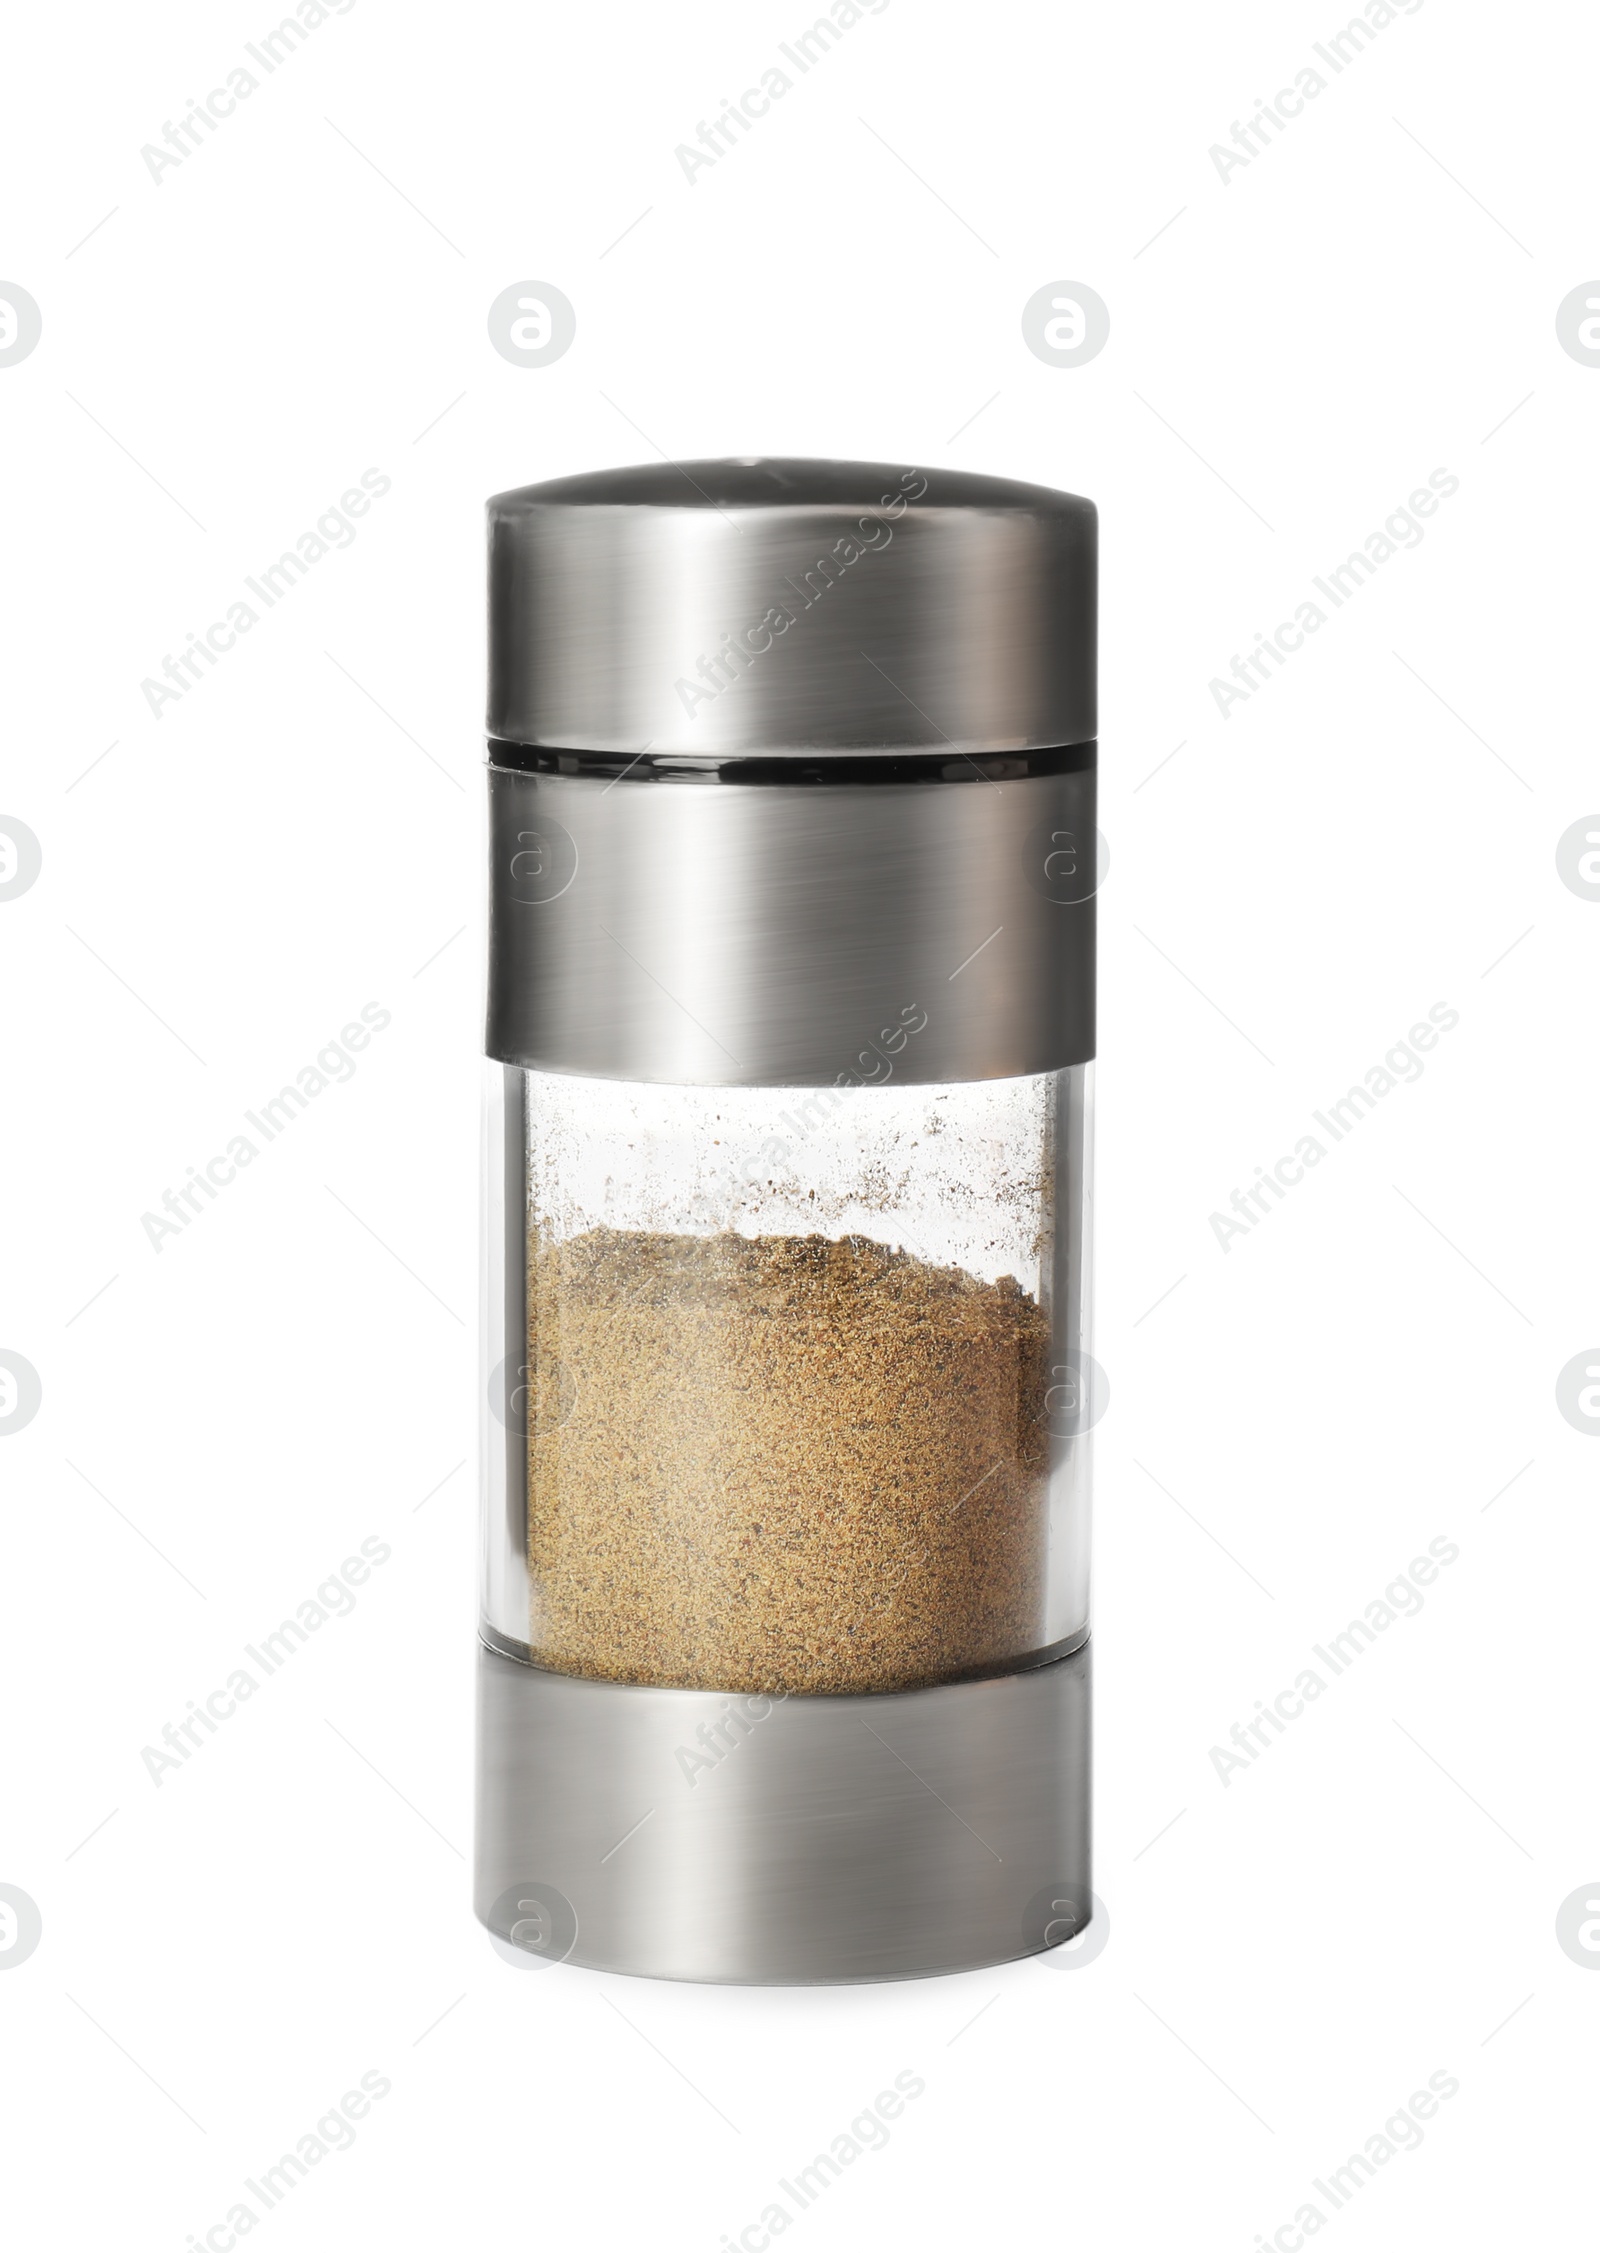 Photo of Pepper shaker isolated on white. Kitchen utensil